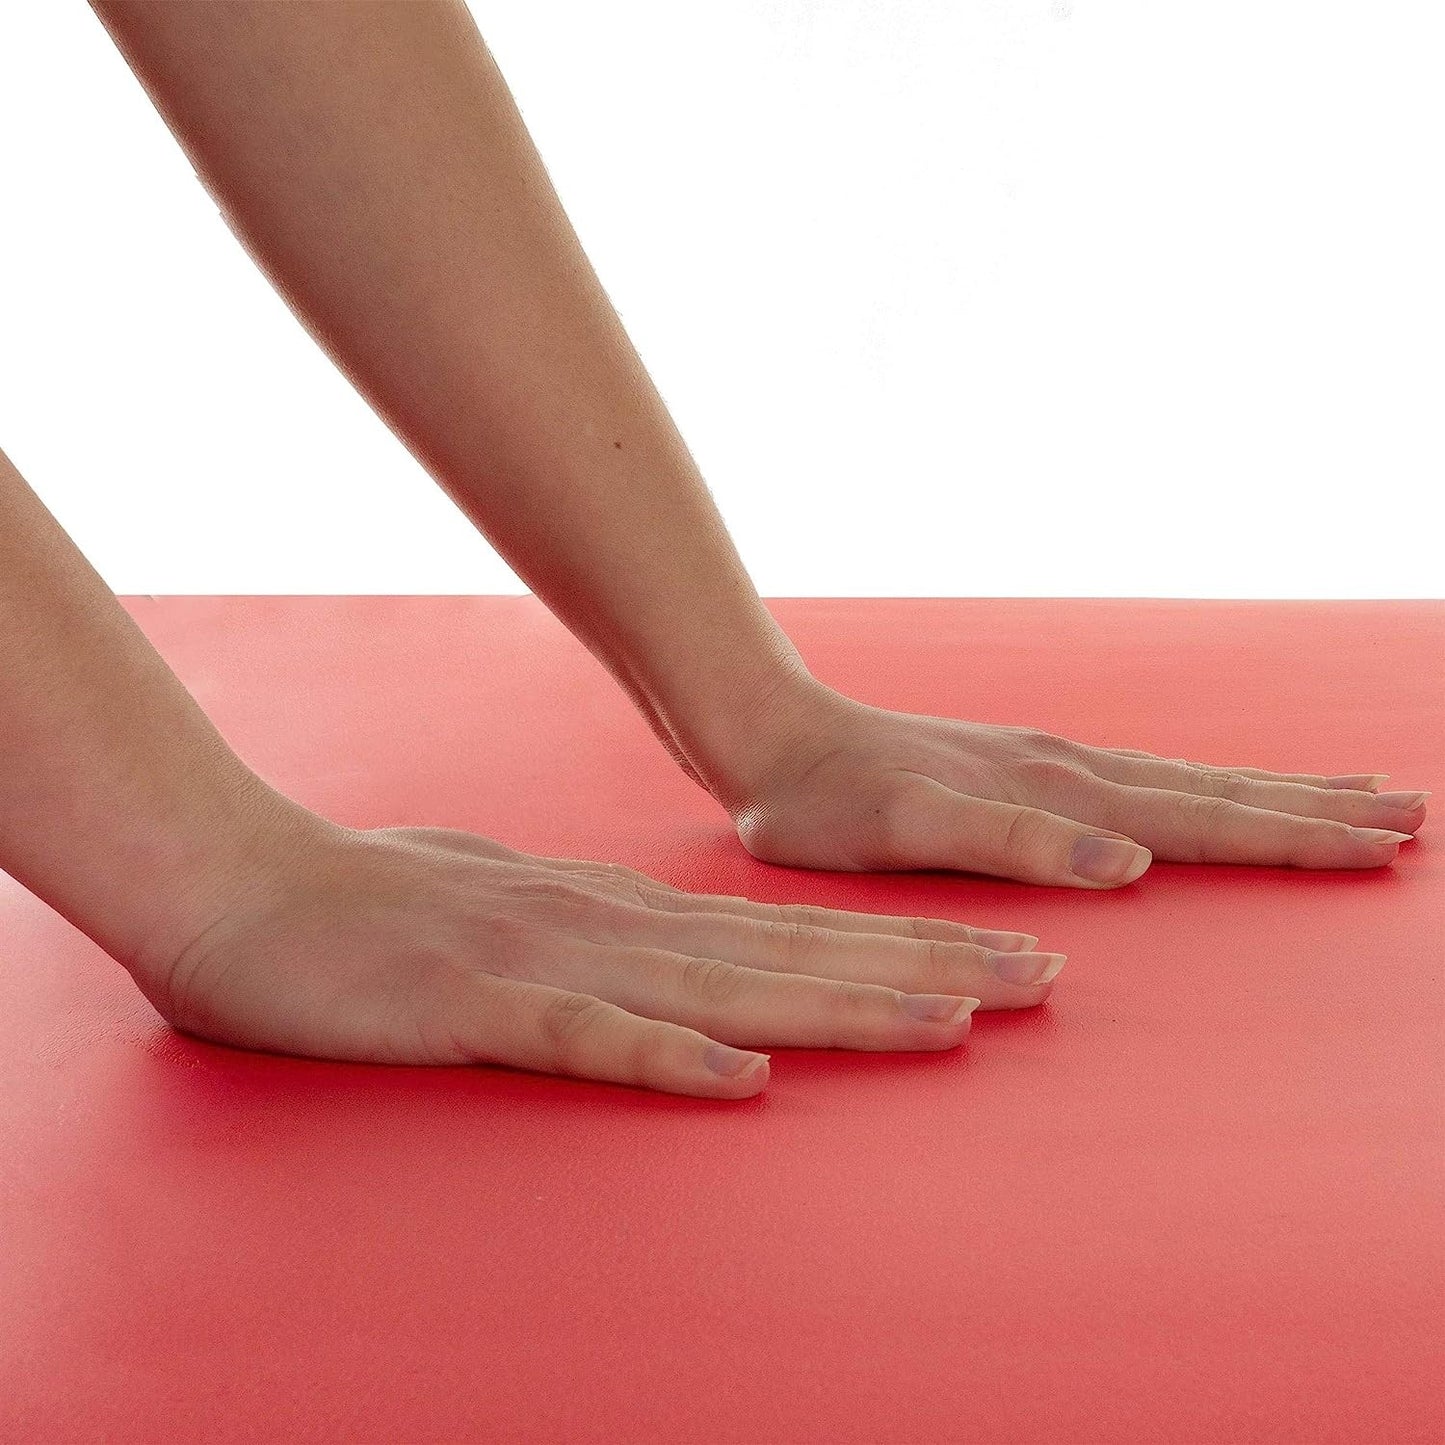 ScSPORTS Yogamat  190 cm x 80 cm x 1,5 cm - Rood